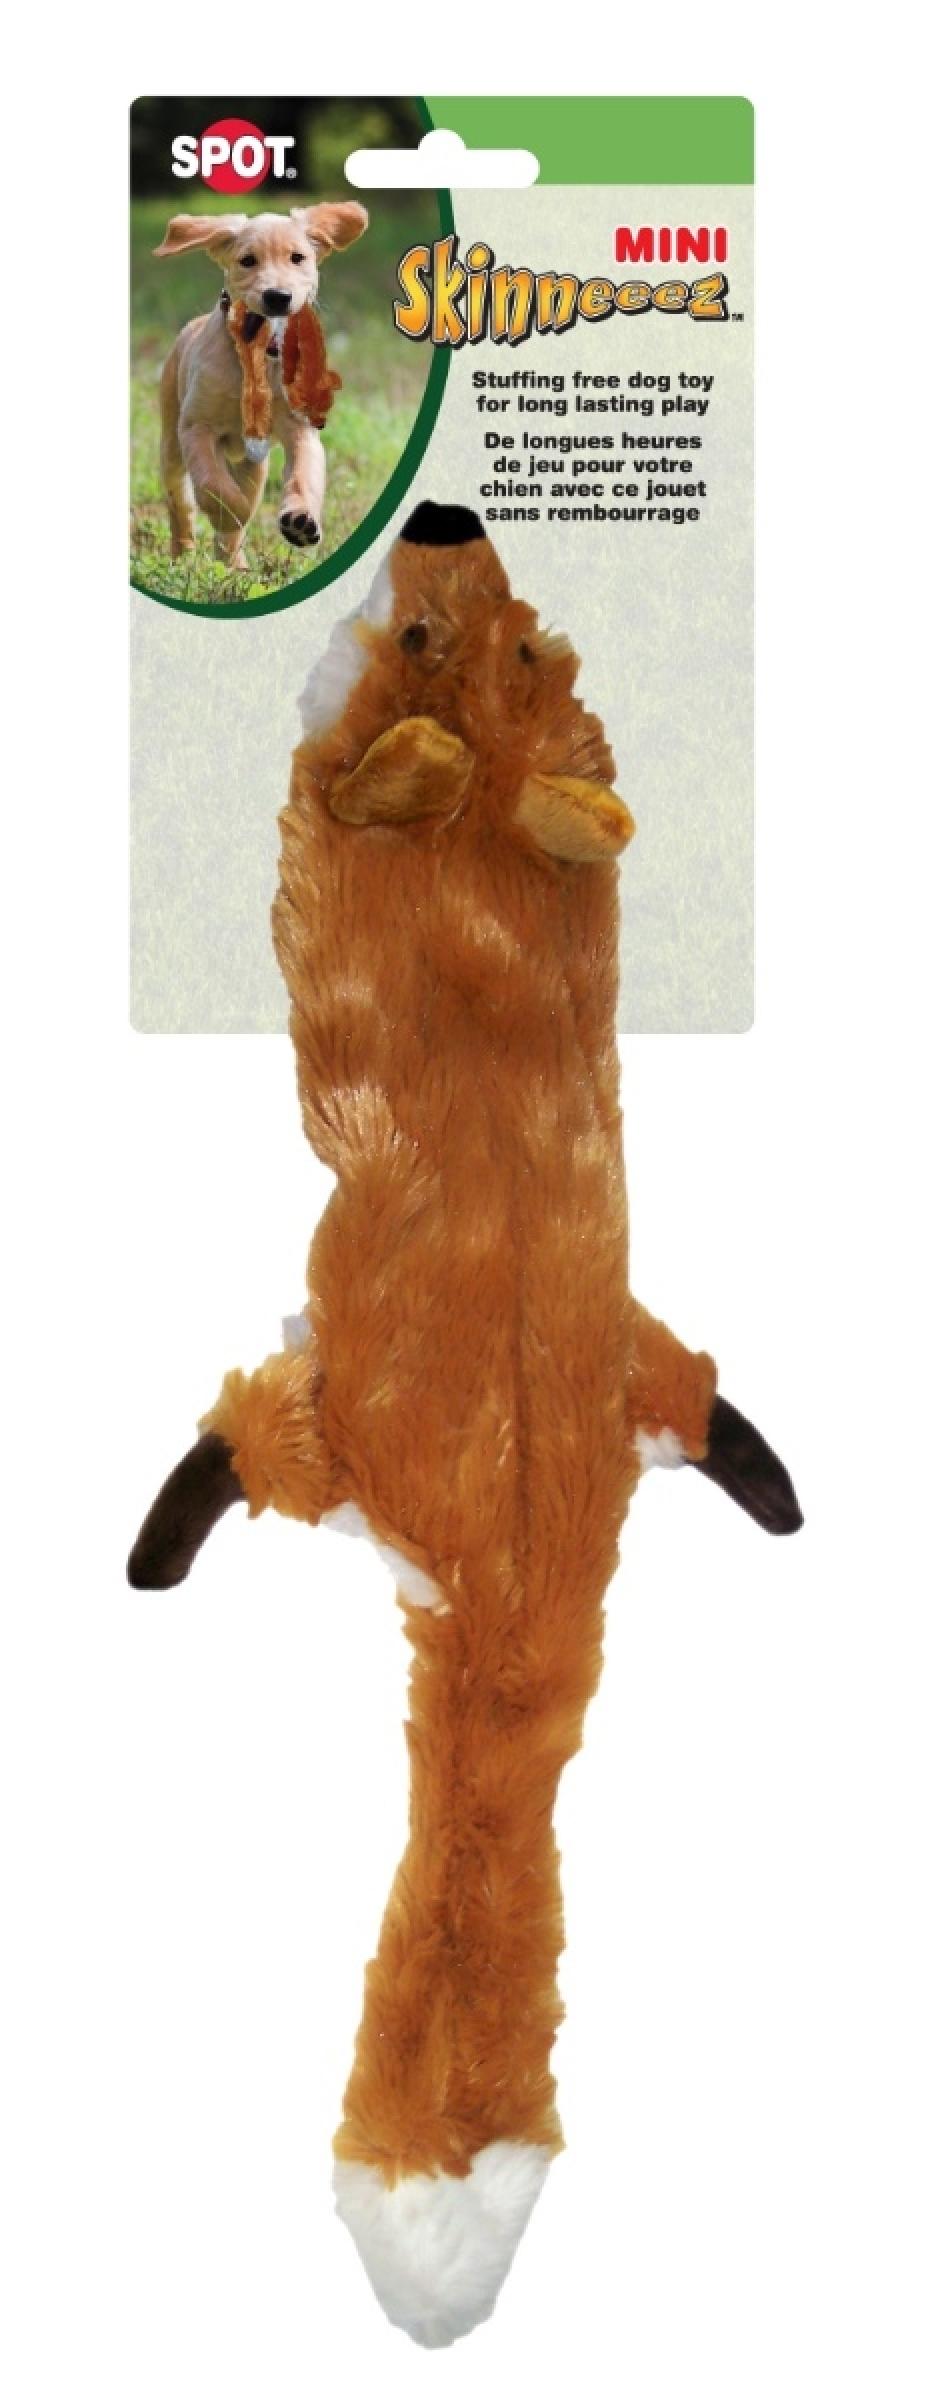 Skinneeez Fox Dog Toy